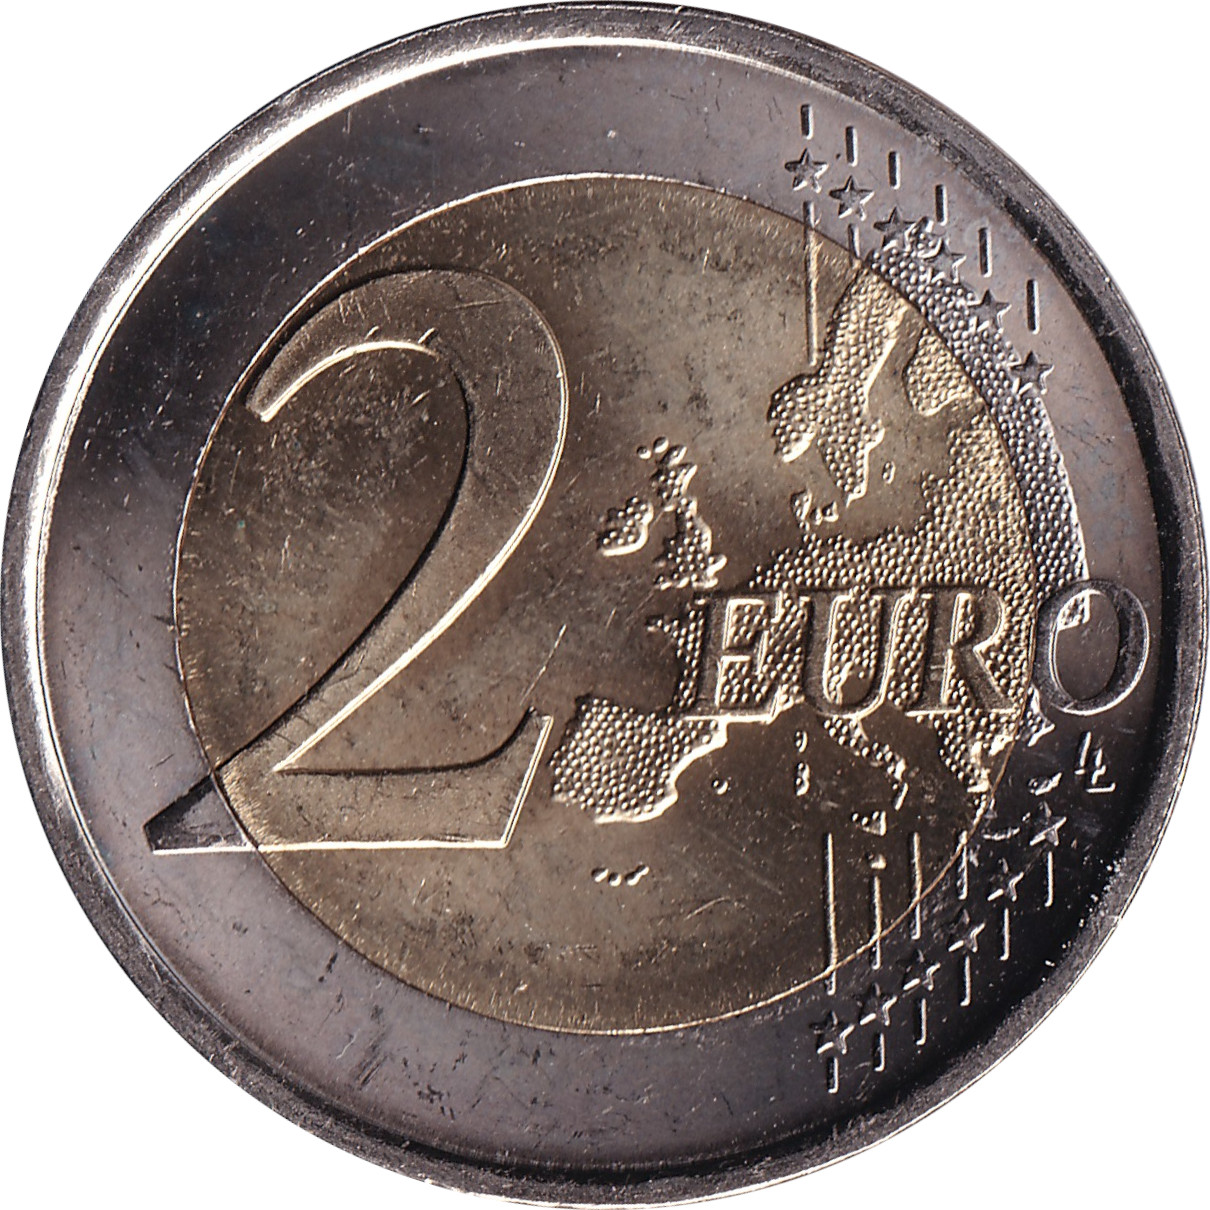 2 euro - Traité de Rome - Espagne